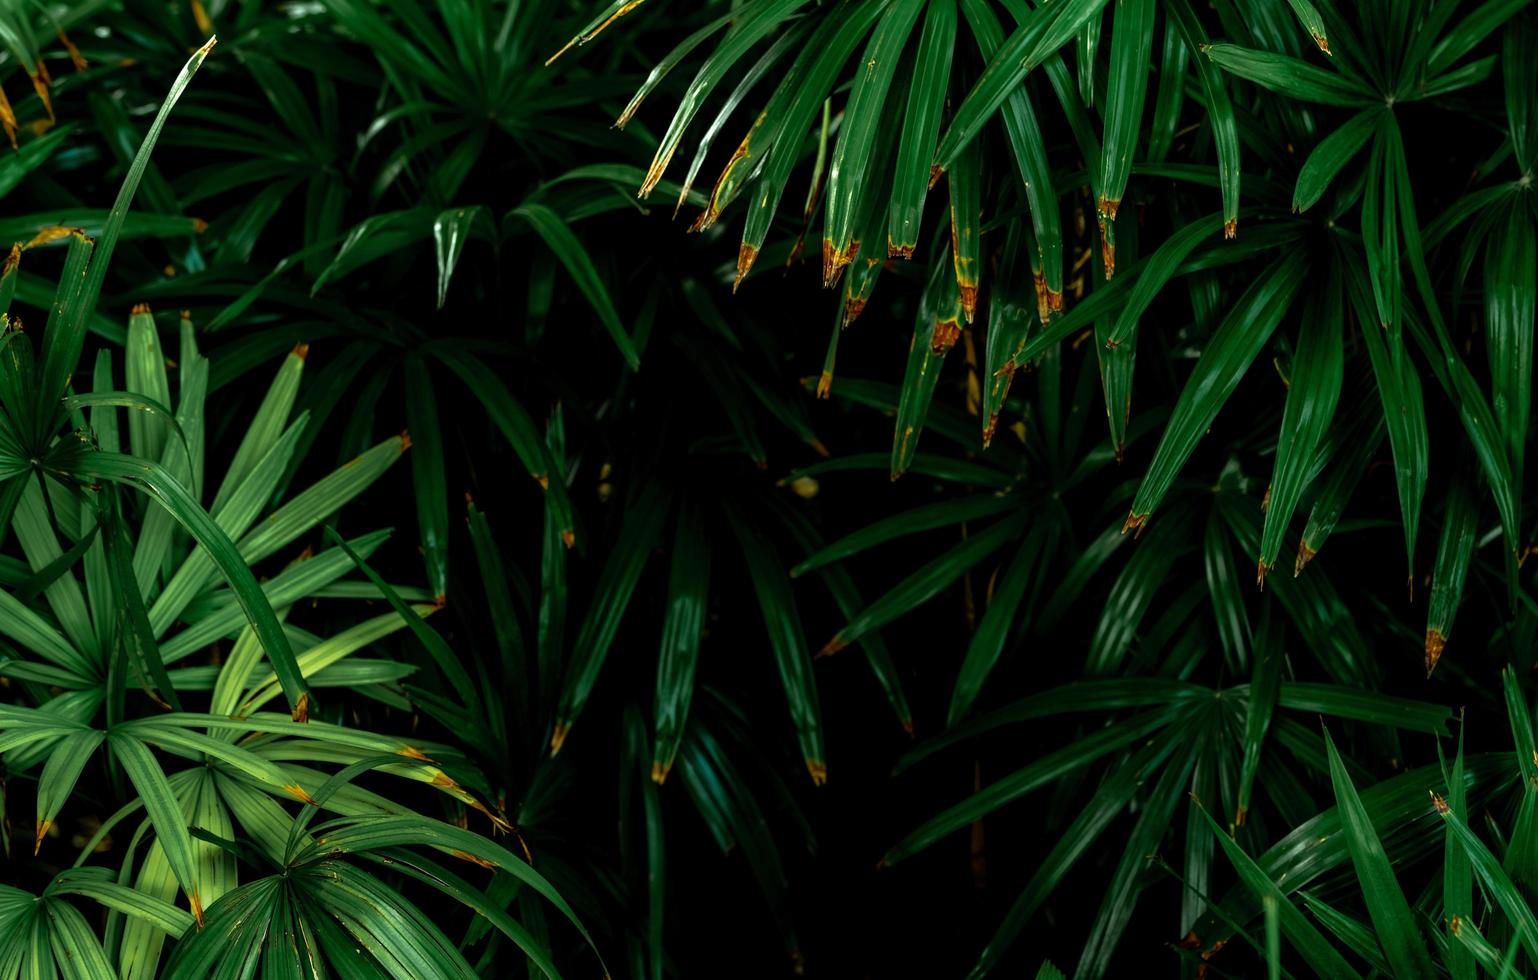 mise au point sélective sur les feuilles vert foncé dans le jardin. texture de feuille vert émeraude. abstrait de la nature. forêt tropicale. vue ci-dessus de feuilles vert foncé avec motif naturel. plante tropicale. photo